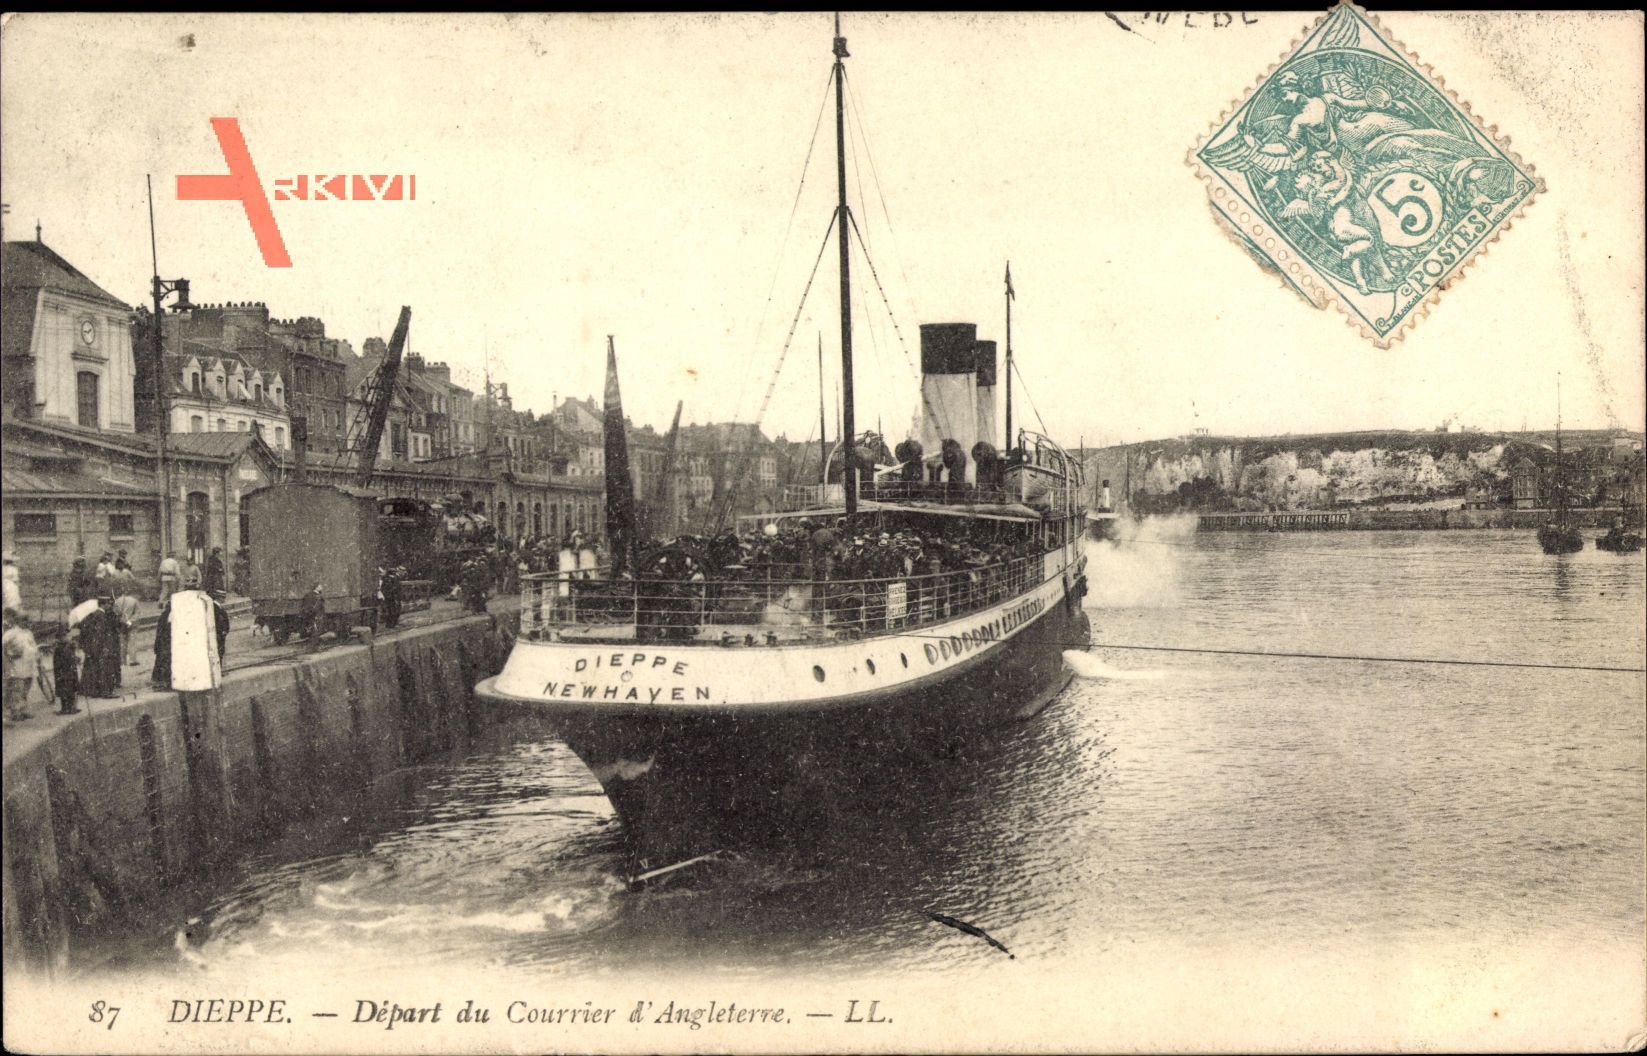 Dieppe Seine Maritime, Depart du Courrier dAngleterre, Fährschiff